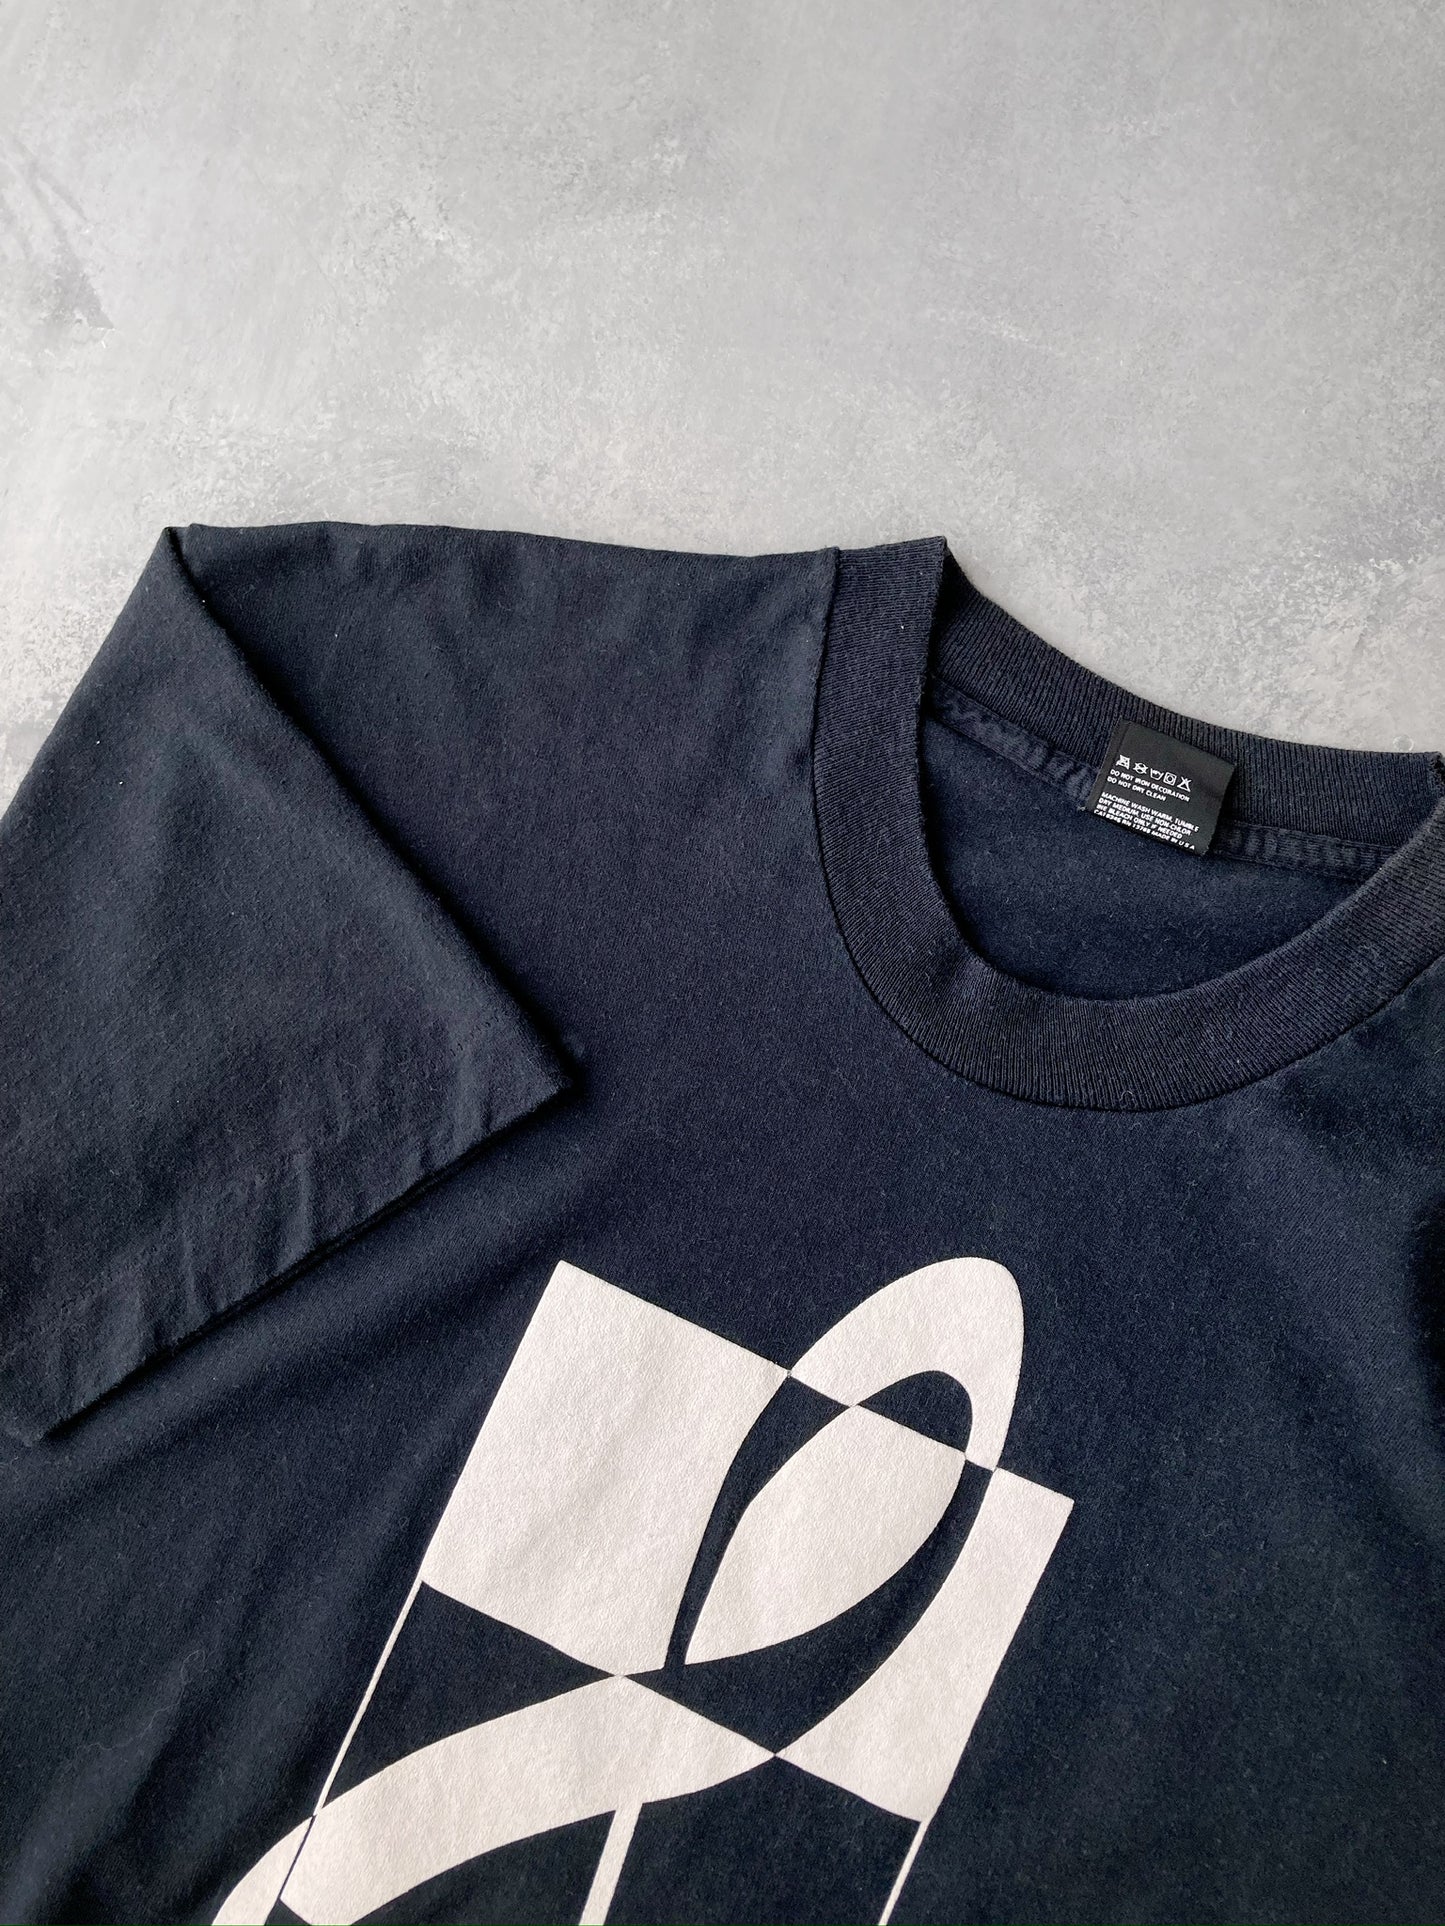 Treble Maker T-Shirt 90's - Large / XL